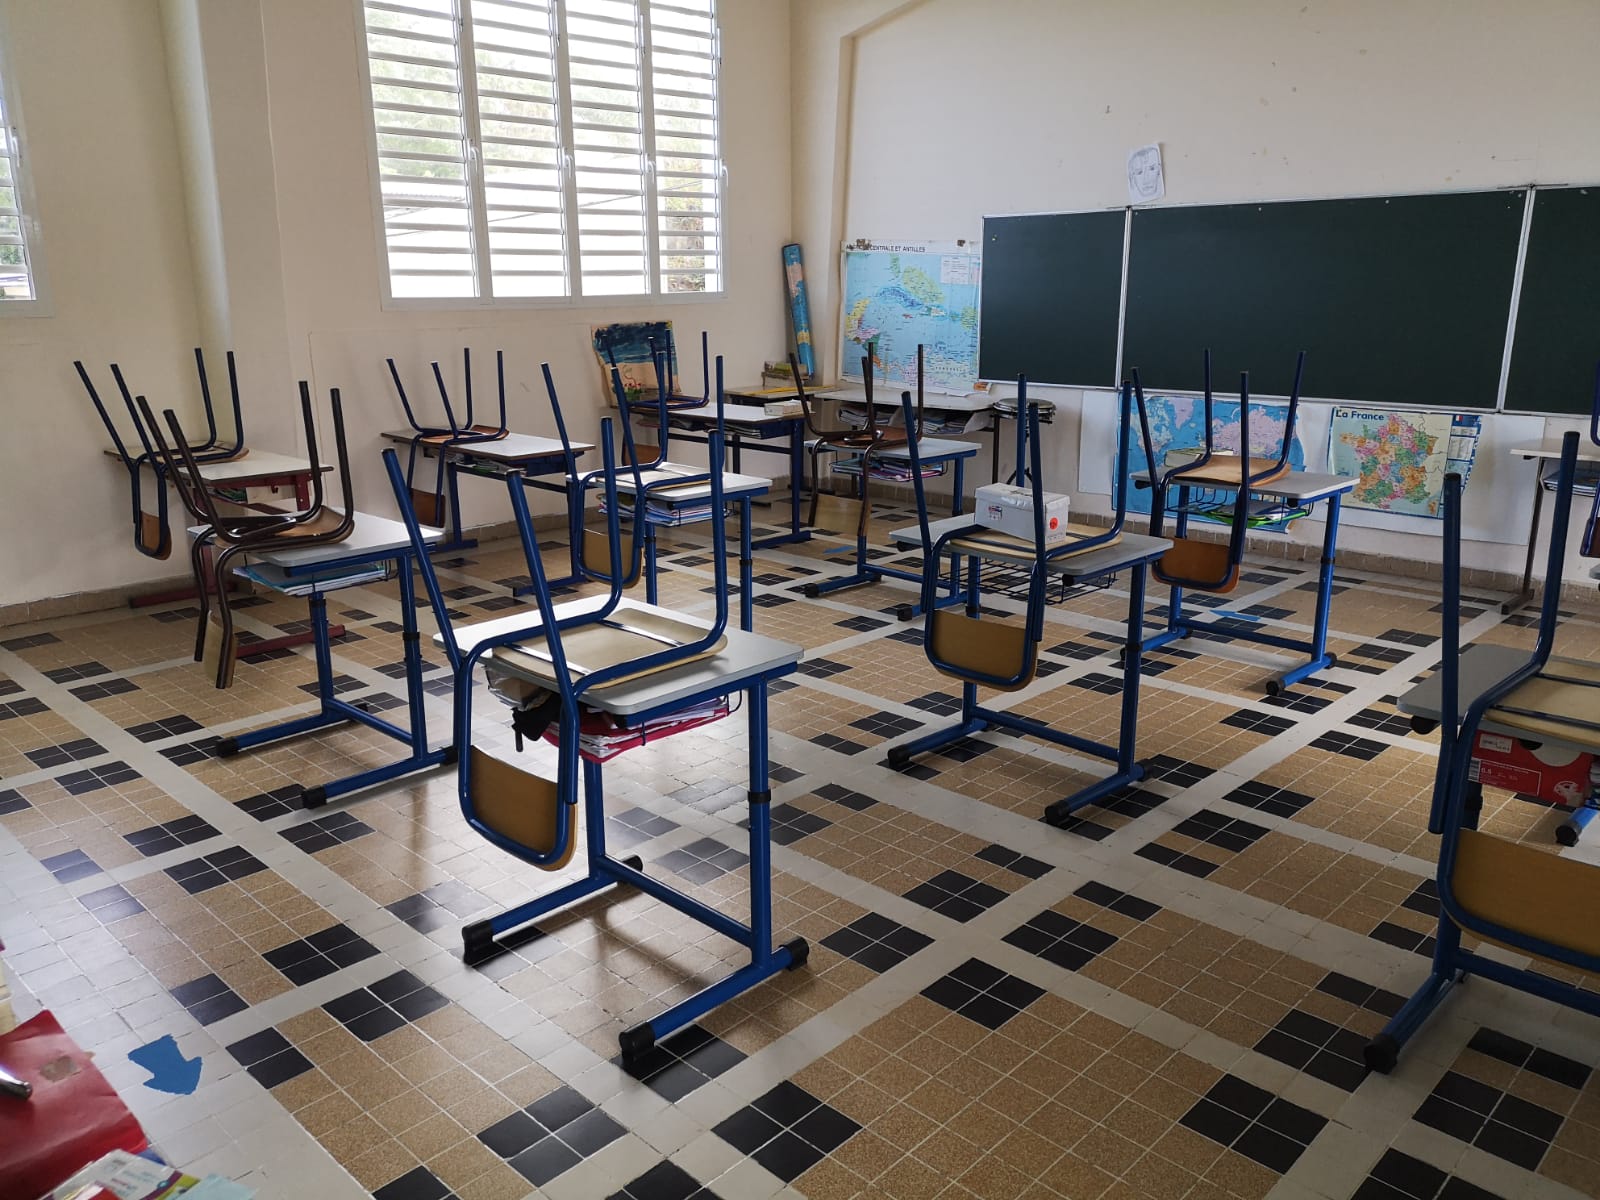     Le Rectorat et la Préfecture de la Martinique demandent aux maires la réouverture des écoles

